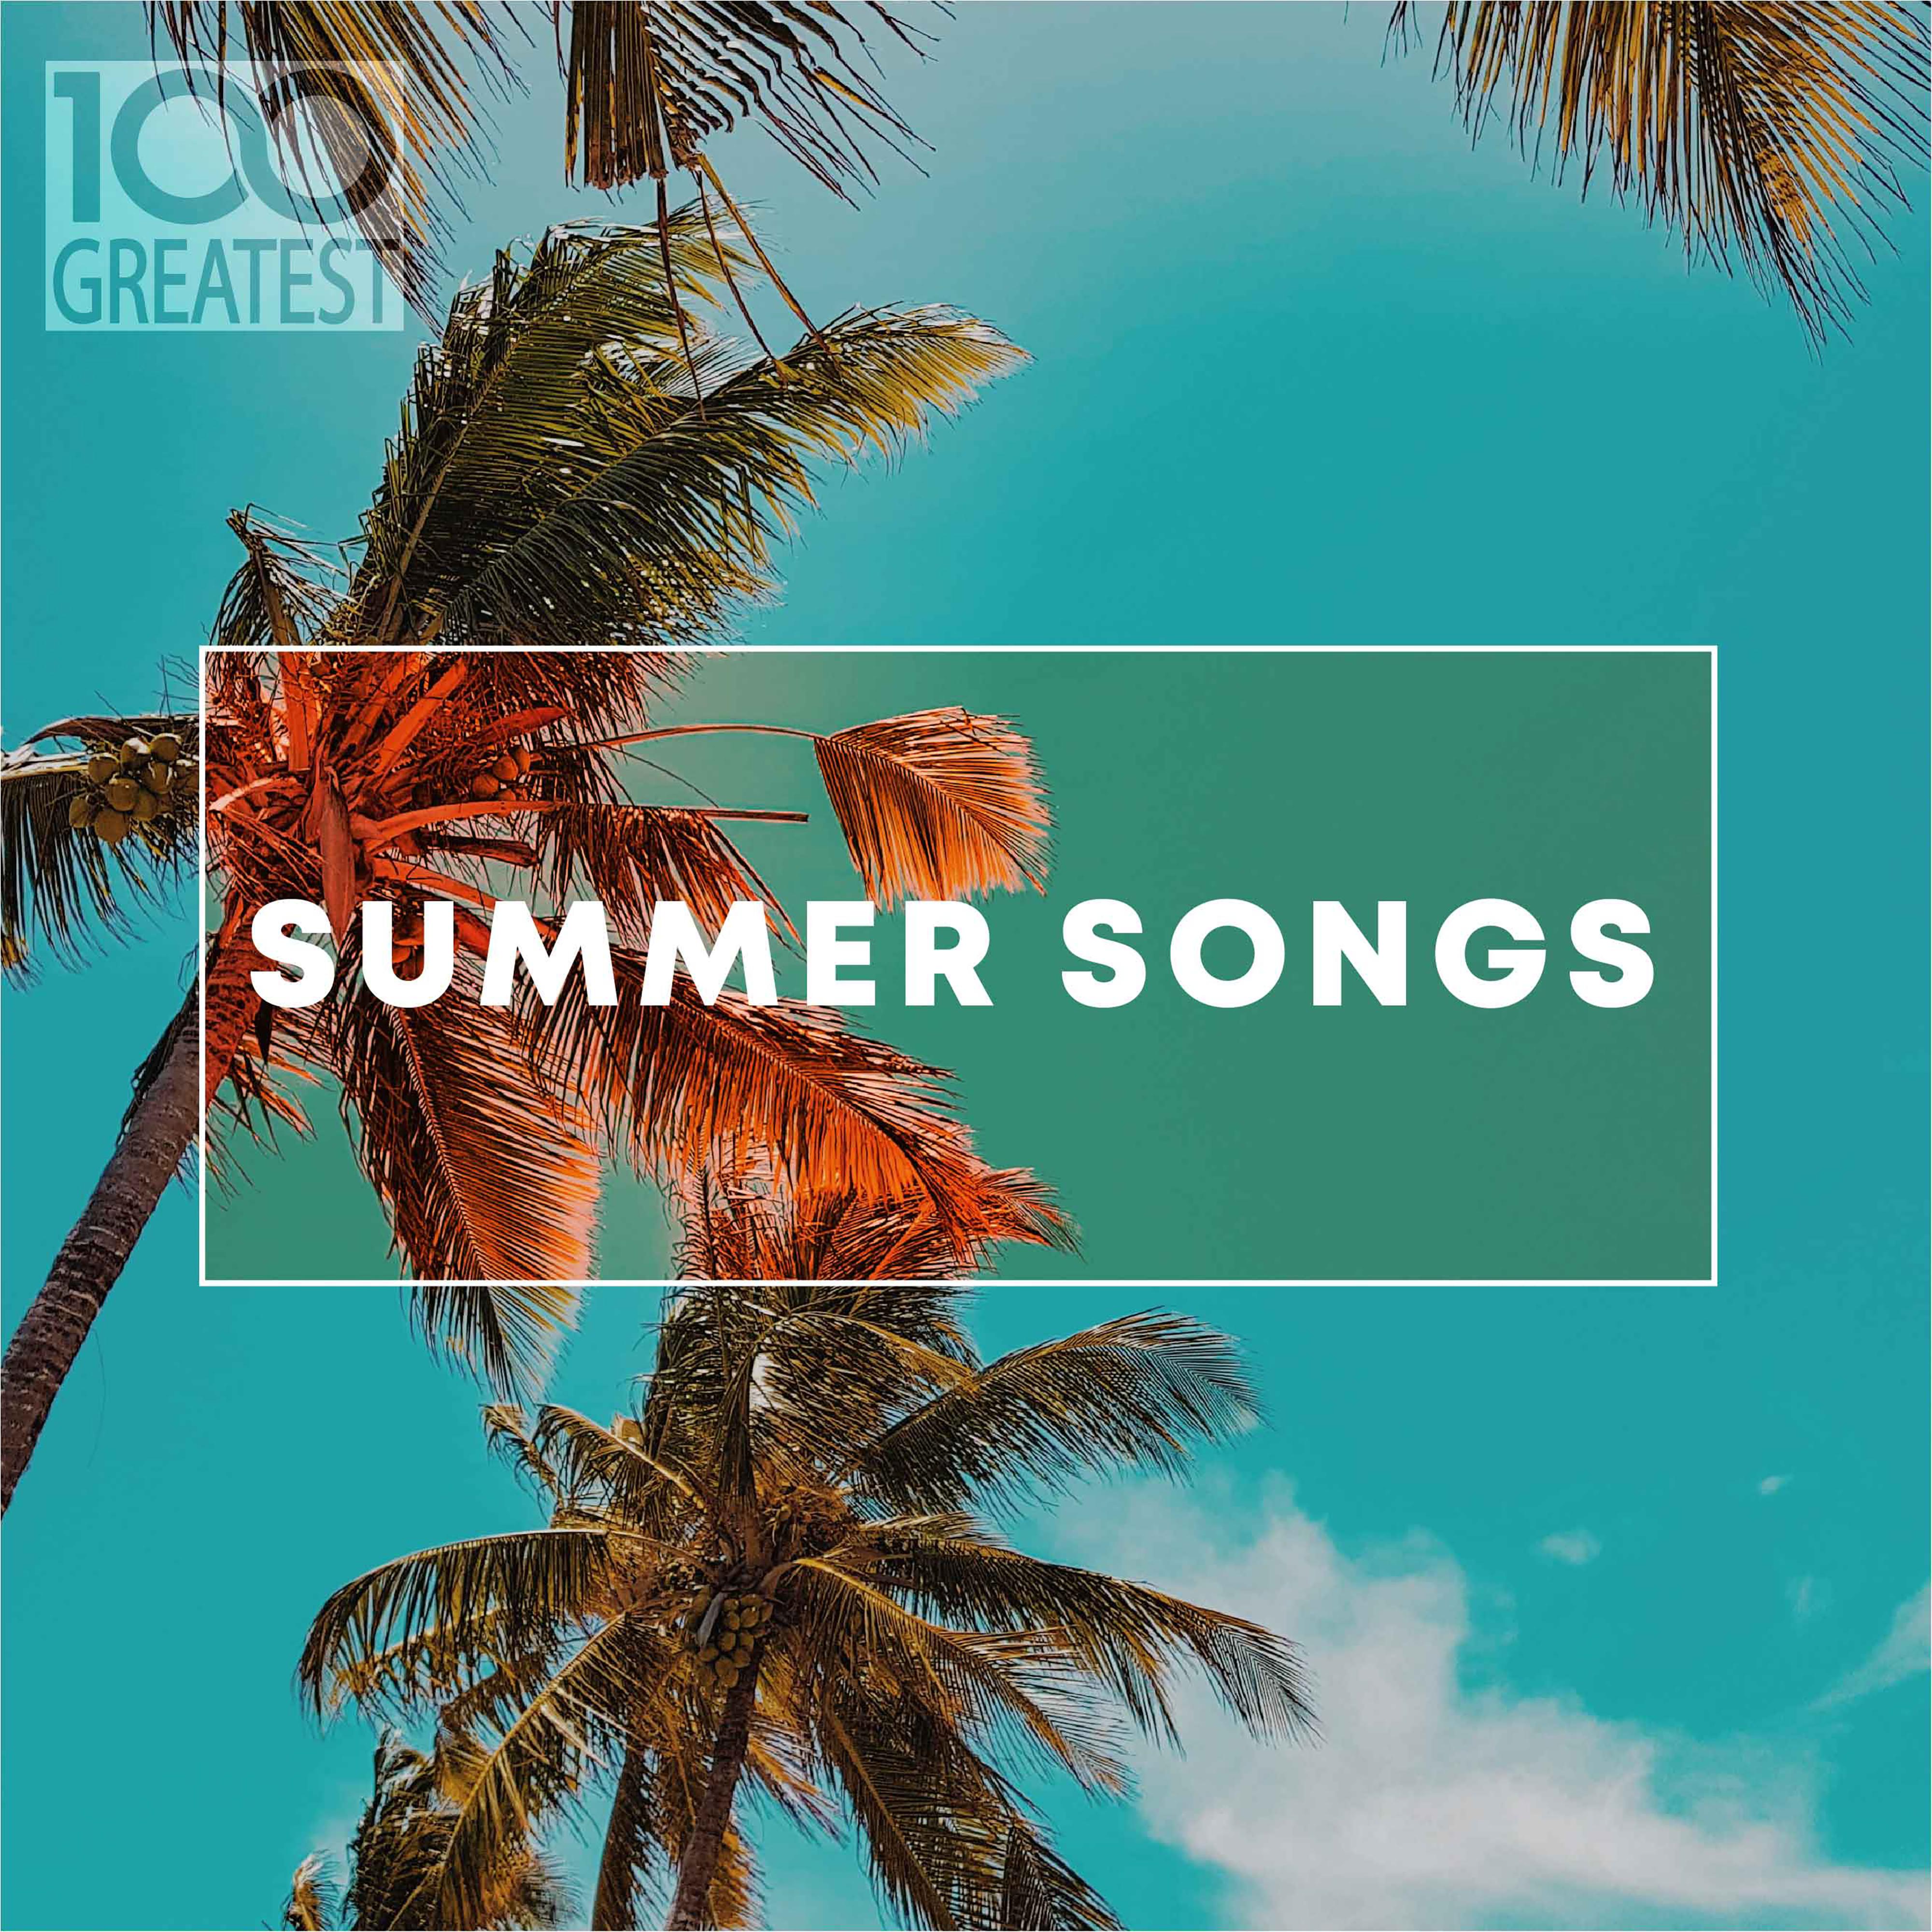 Песня лето на звонок. 100 Greatest Summer Songs. Песня Summer. Summer Summer Summer песня. Фото на альбоме песни Summer.